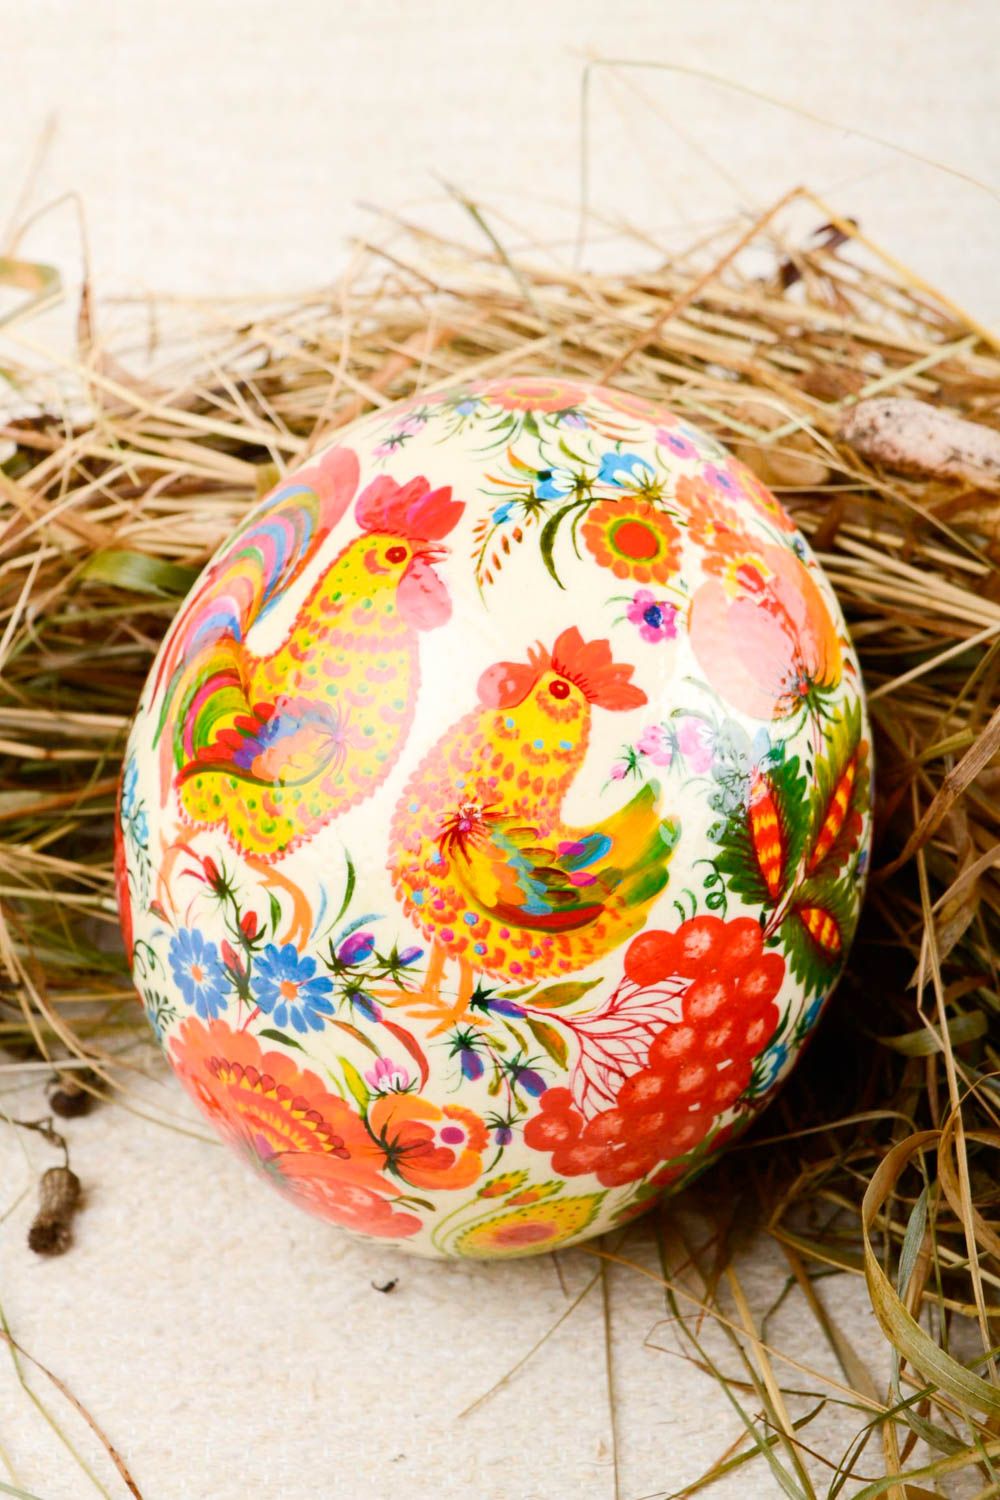 Huevo de Pascua hecho a mano pintado regalo original decoración para fiestas foto 1